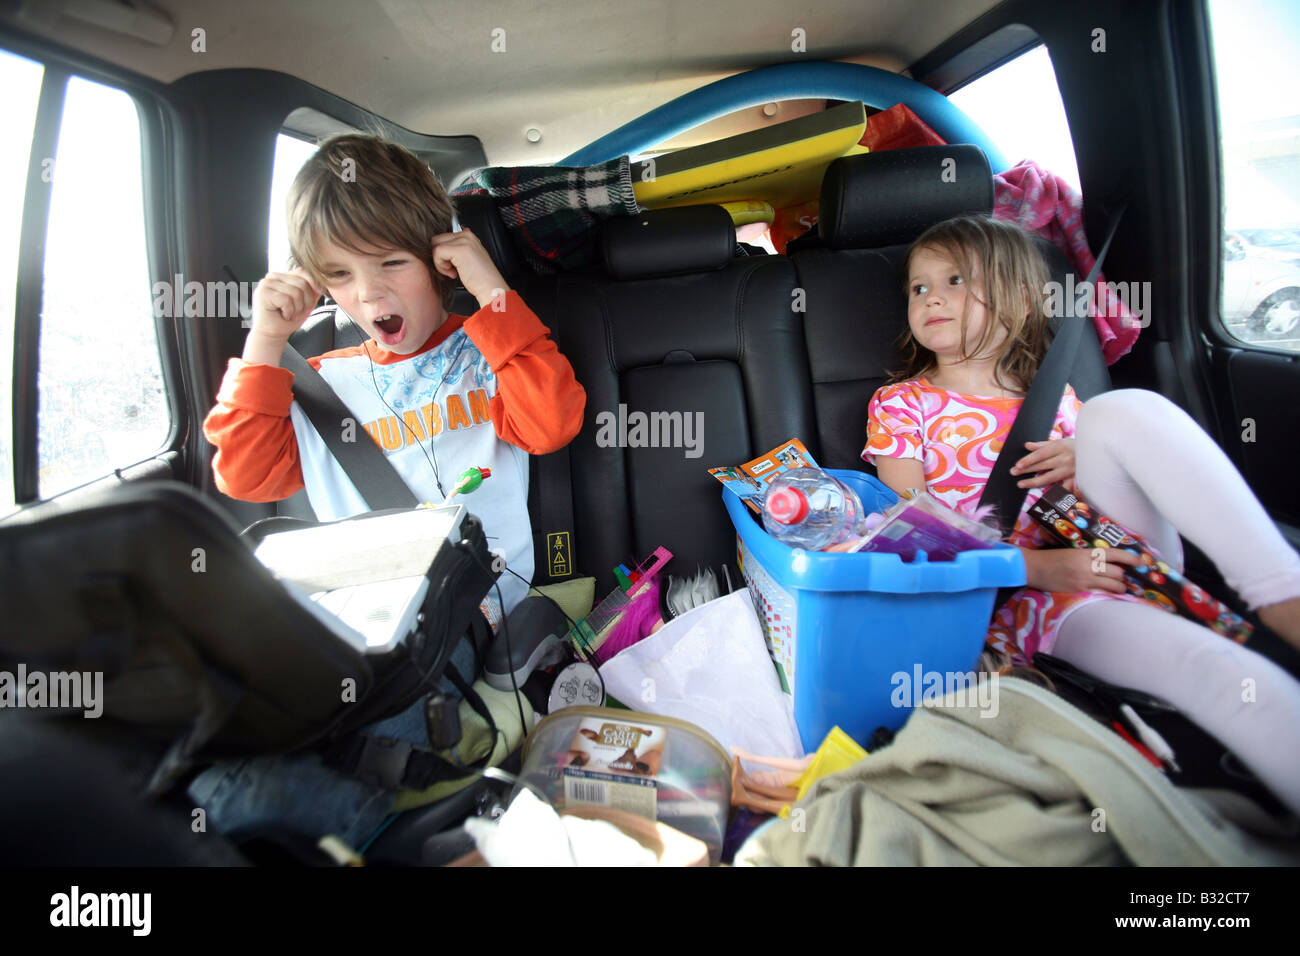 Pic mostra due bambini che viaggiano in vacanza nel retro di un automobile Foto Stock